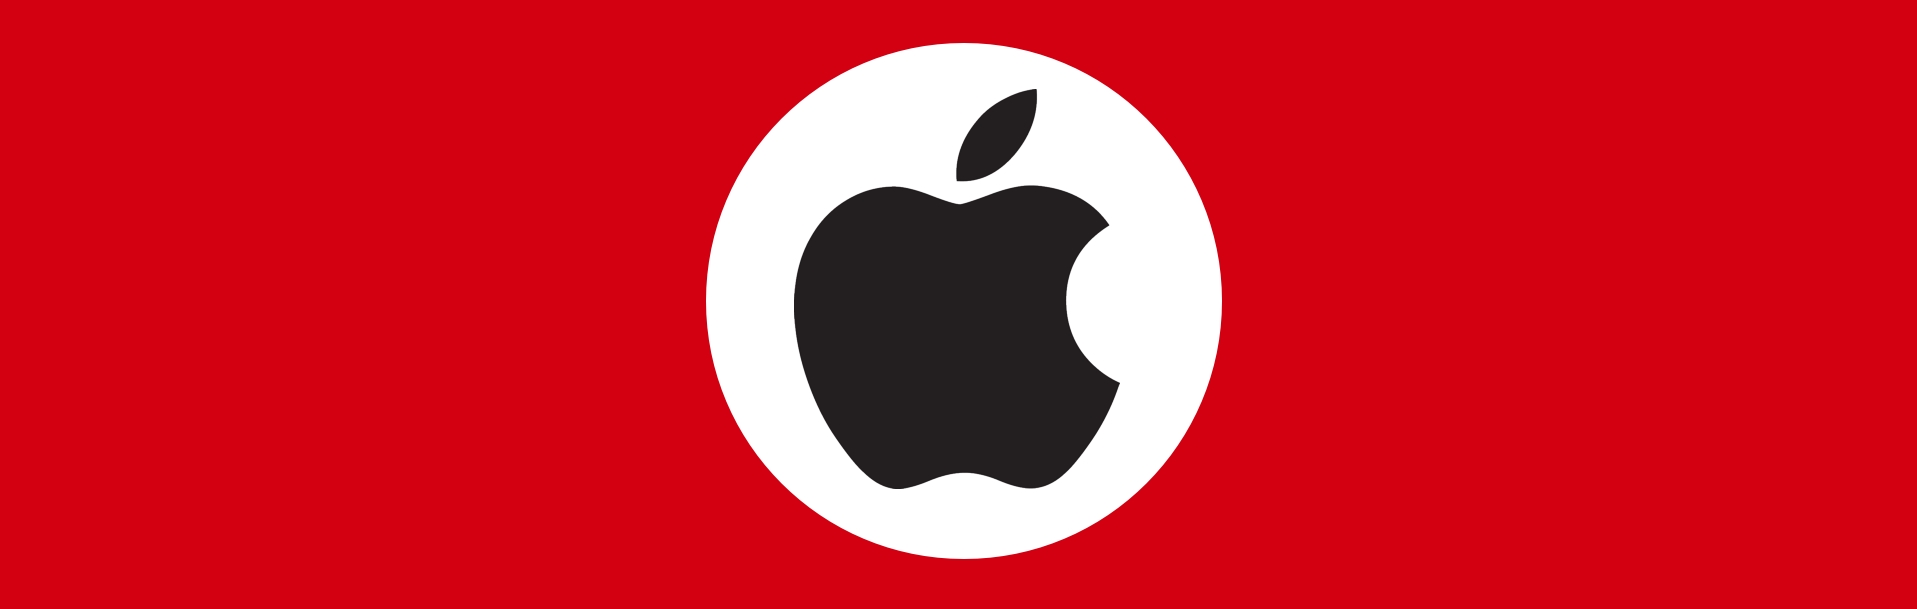 Apple öppnar för övervakning och censur